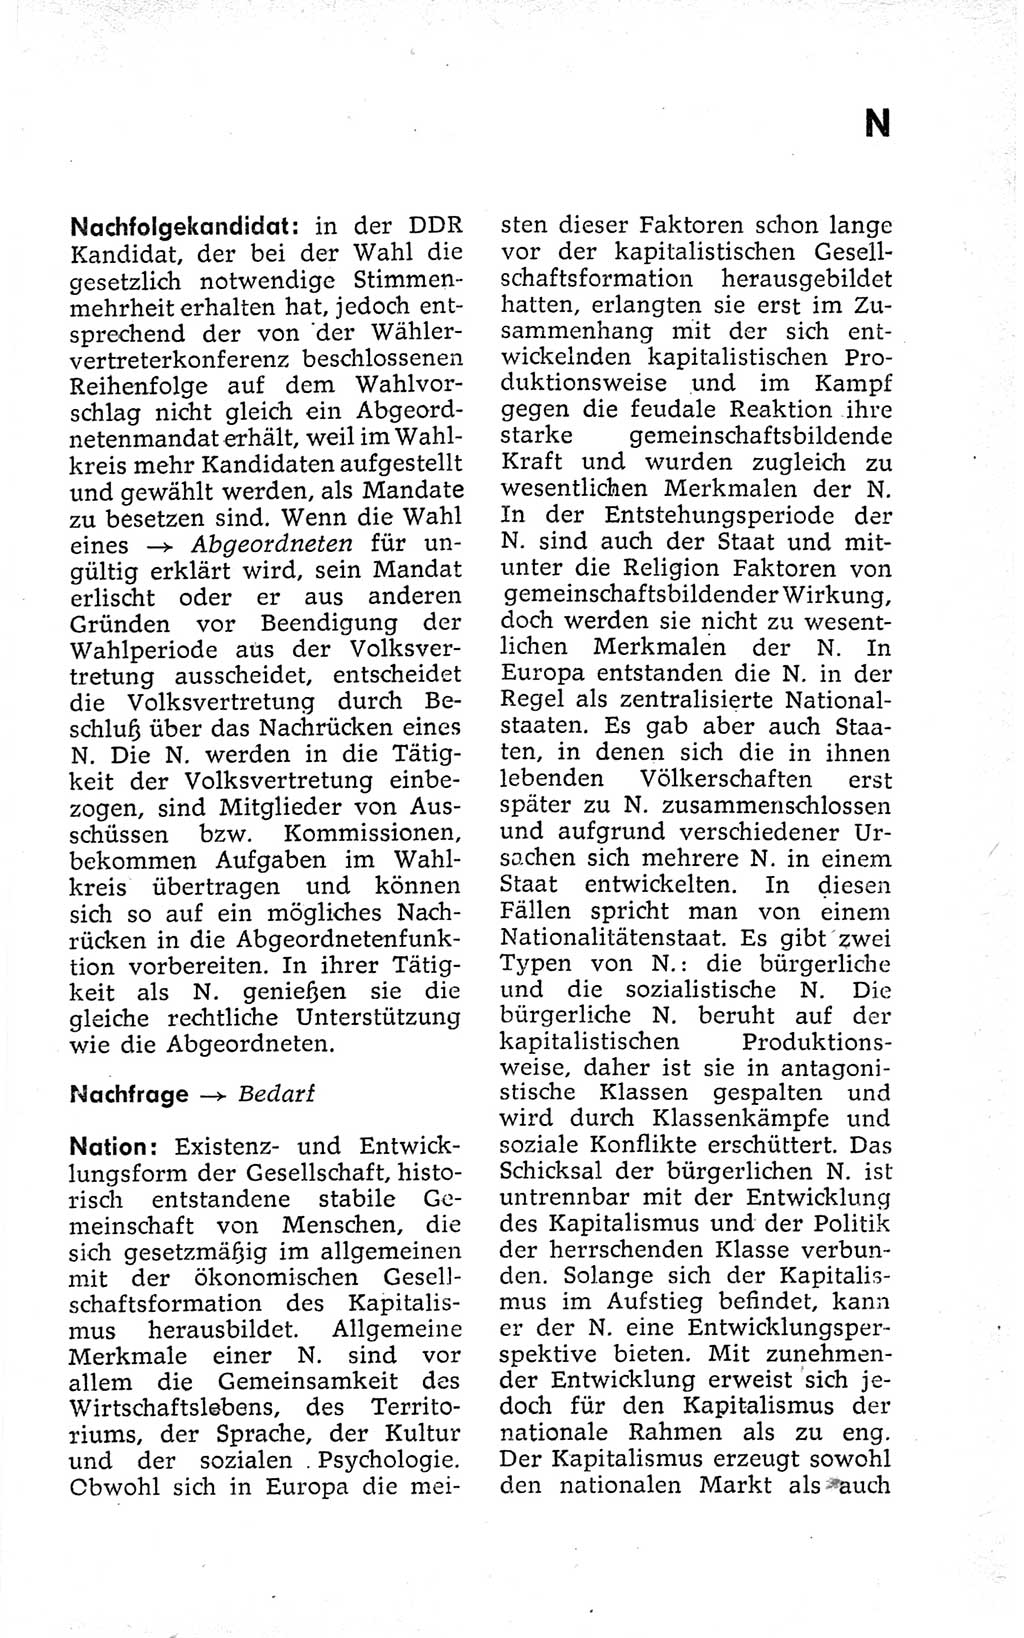 Kleines politisches Wörterbuch [Deutsche Demokratische Republik (DDR)] 1973, Seite 567 (Kl. pol. Wb. DDR 1973, S. 567)